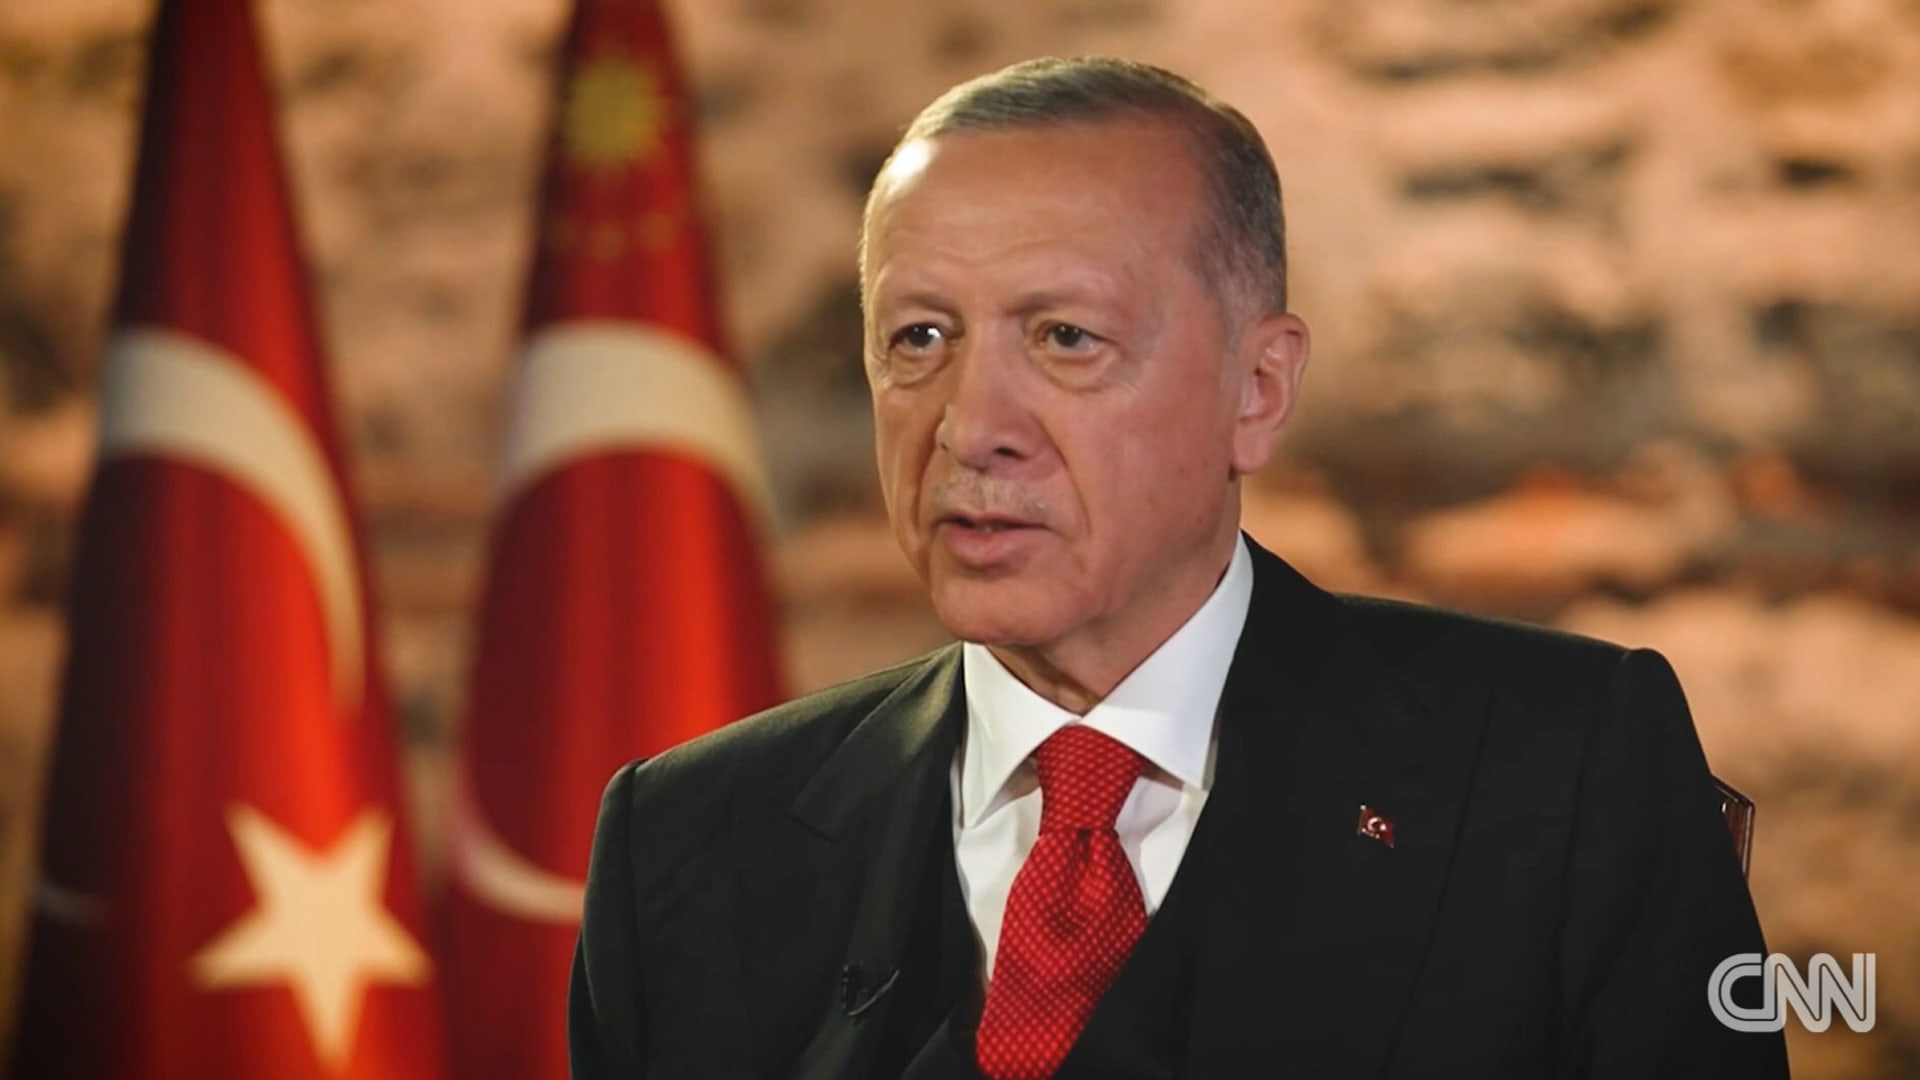 "كنت منزعجًا للغاية في الماضي".. شاهد رد أردوغان عند سؤاله عن علاقة تركيا مع دول الخليج